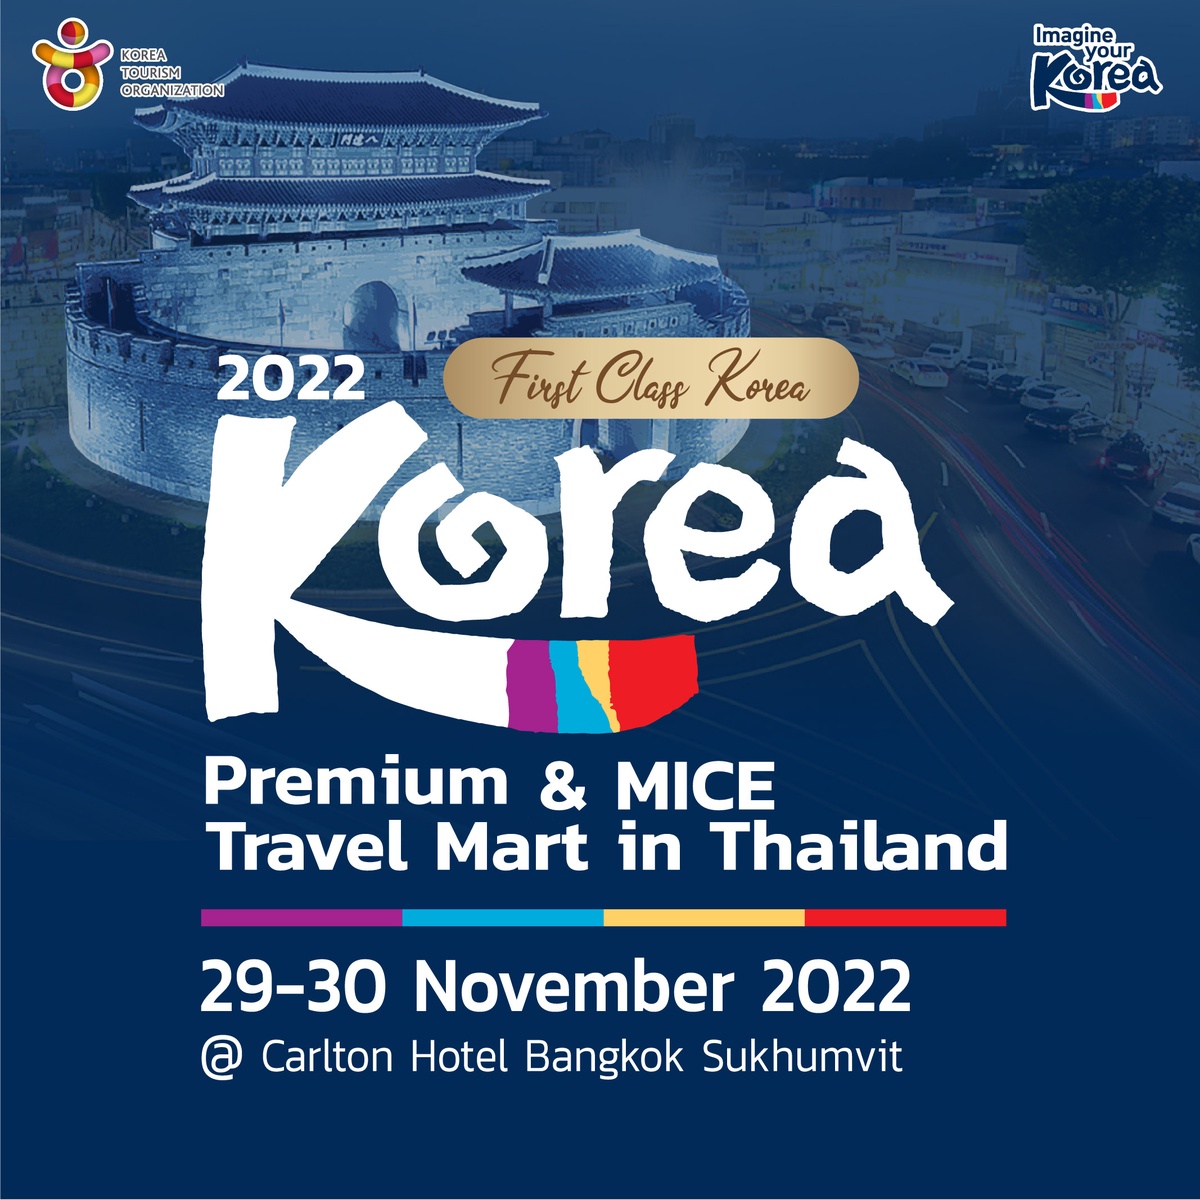 KTO จัดงาน Premium MICE Travel Mart in Thailand 2022-First Class Korea 29-30 พฤศจิกายนนี้ ณ โรงแรมคาร์ลตัน กรุงเทพฯ